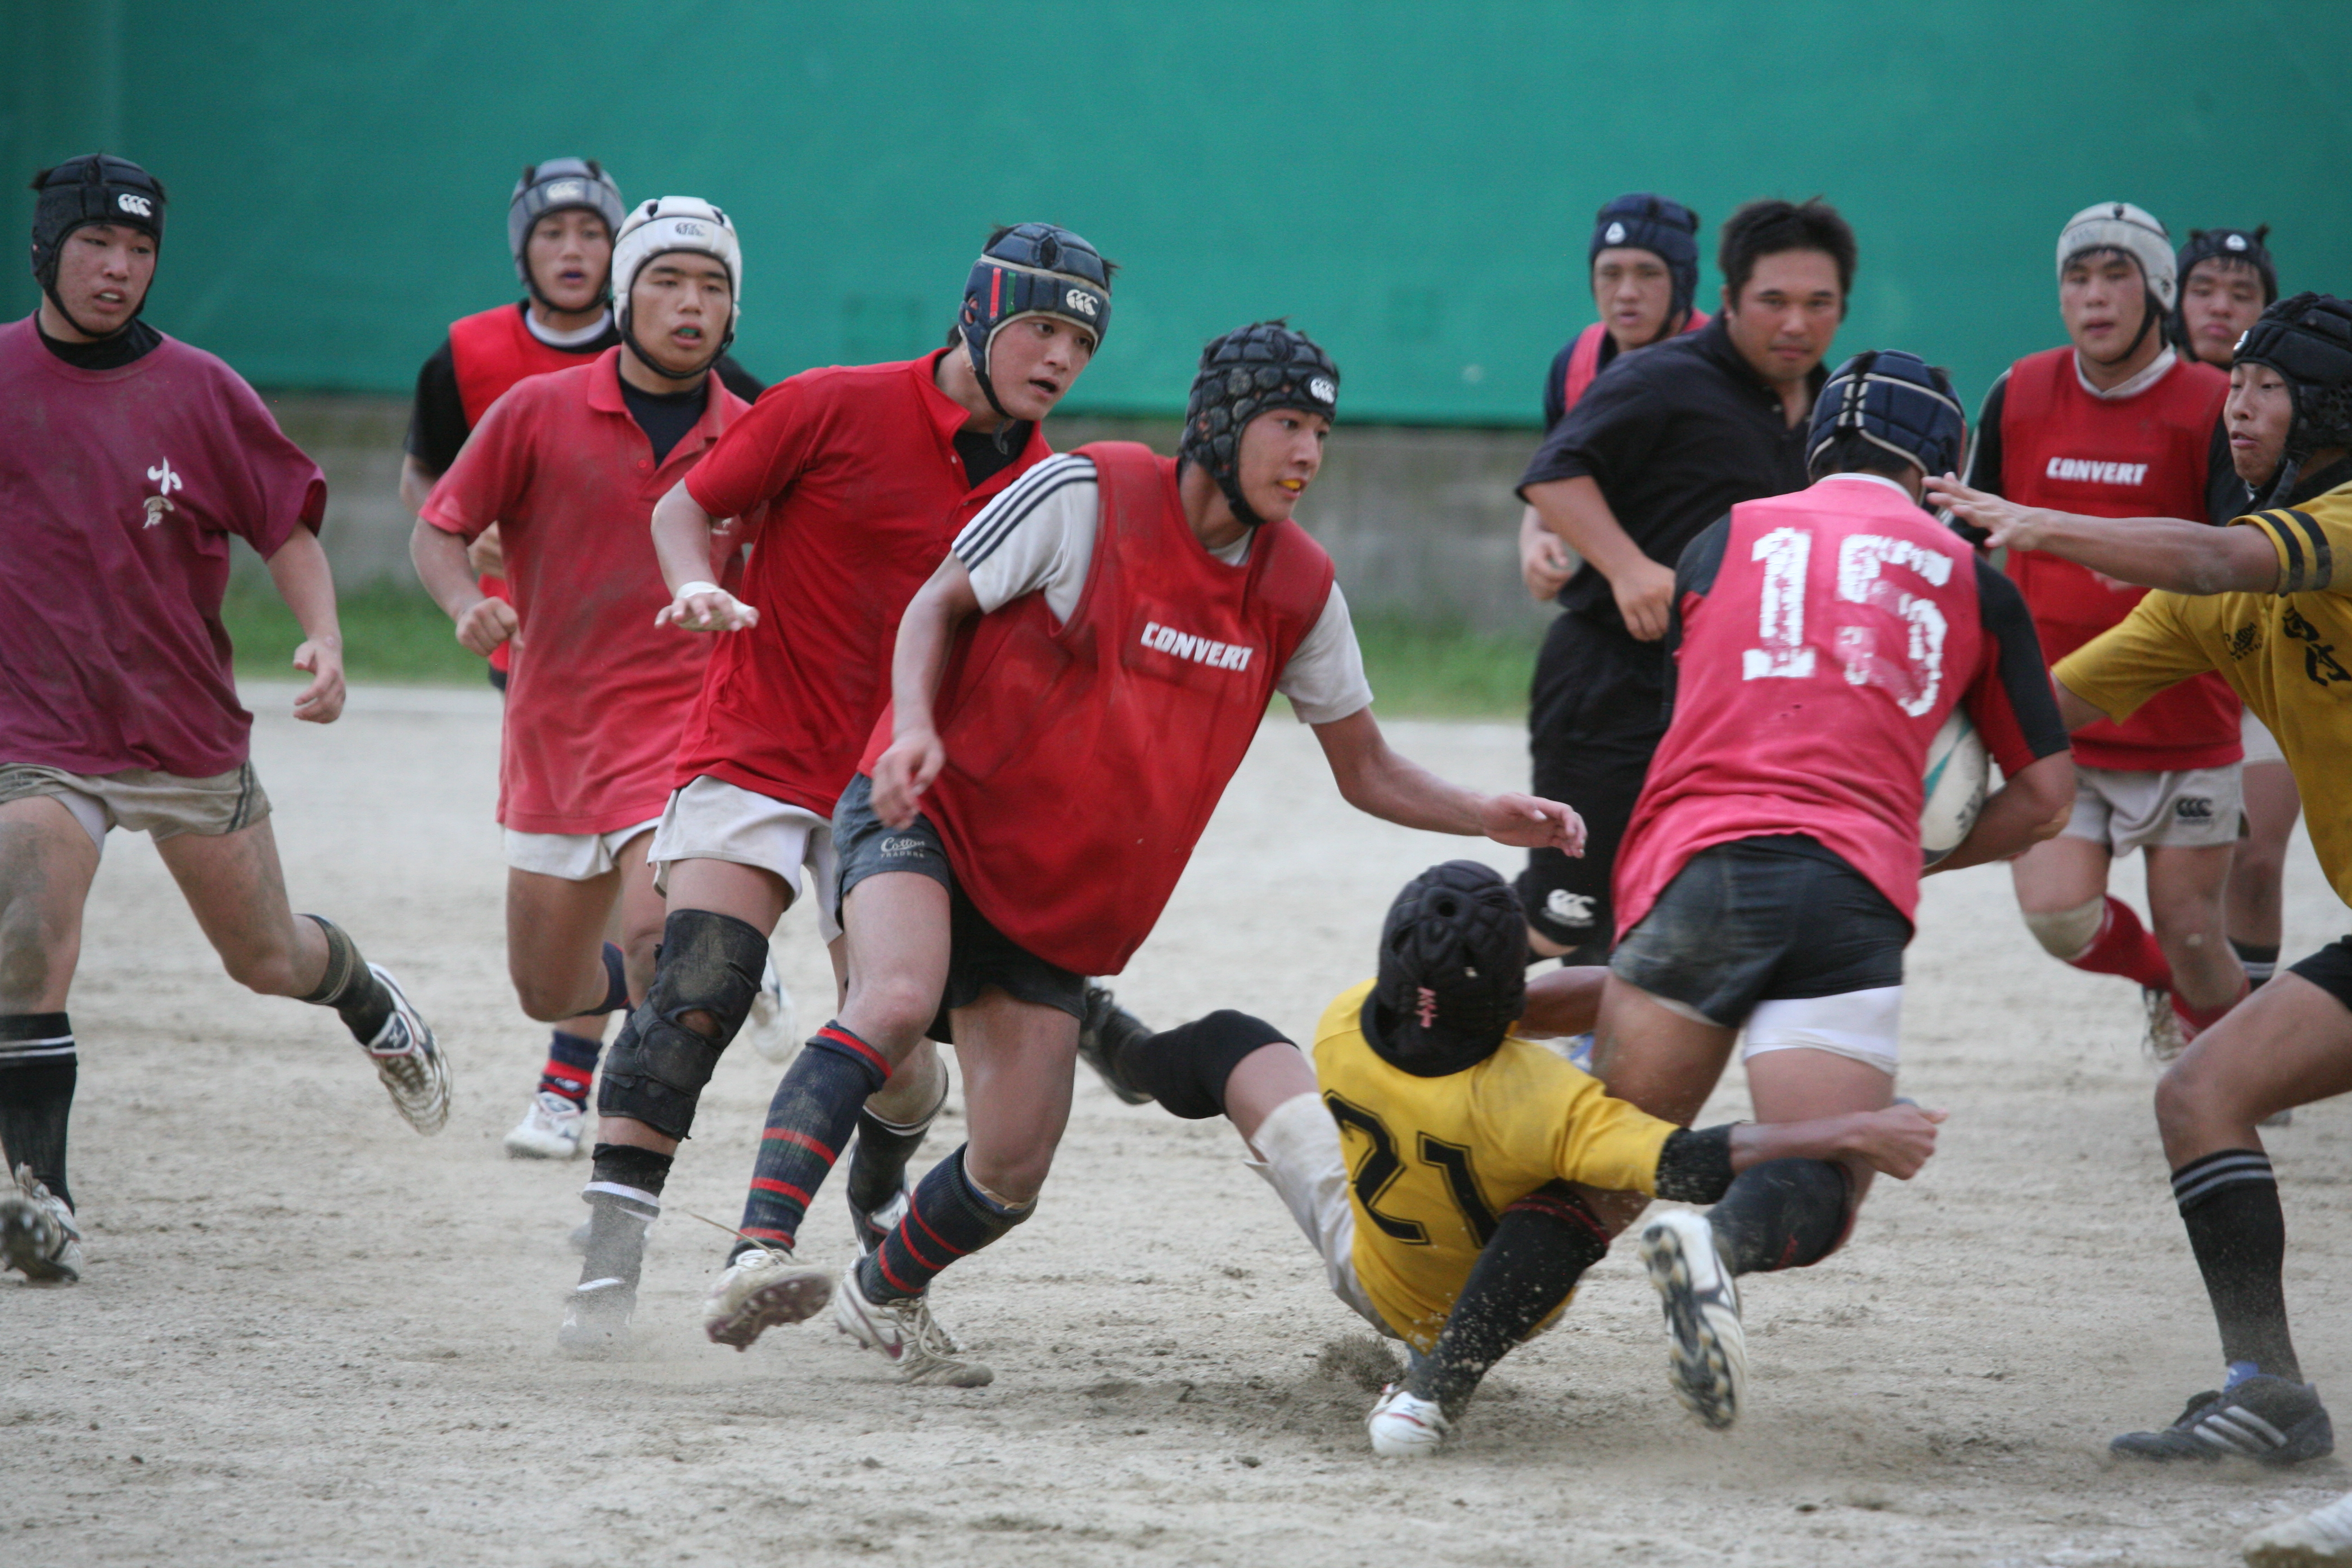 http://kokura-rugby.sakura.ne.jp/2010.7.31%E7%B7%B4%E7%BF%92%E9%A2%A8%E6%99%AF-6.JPG